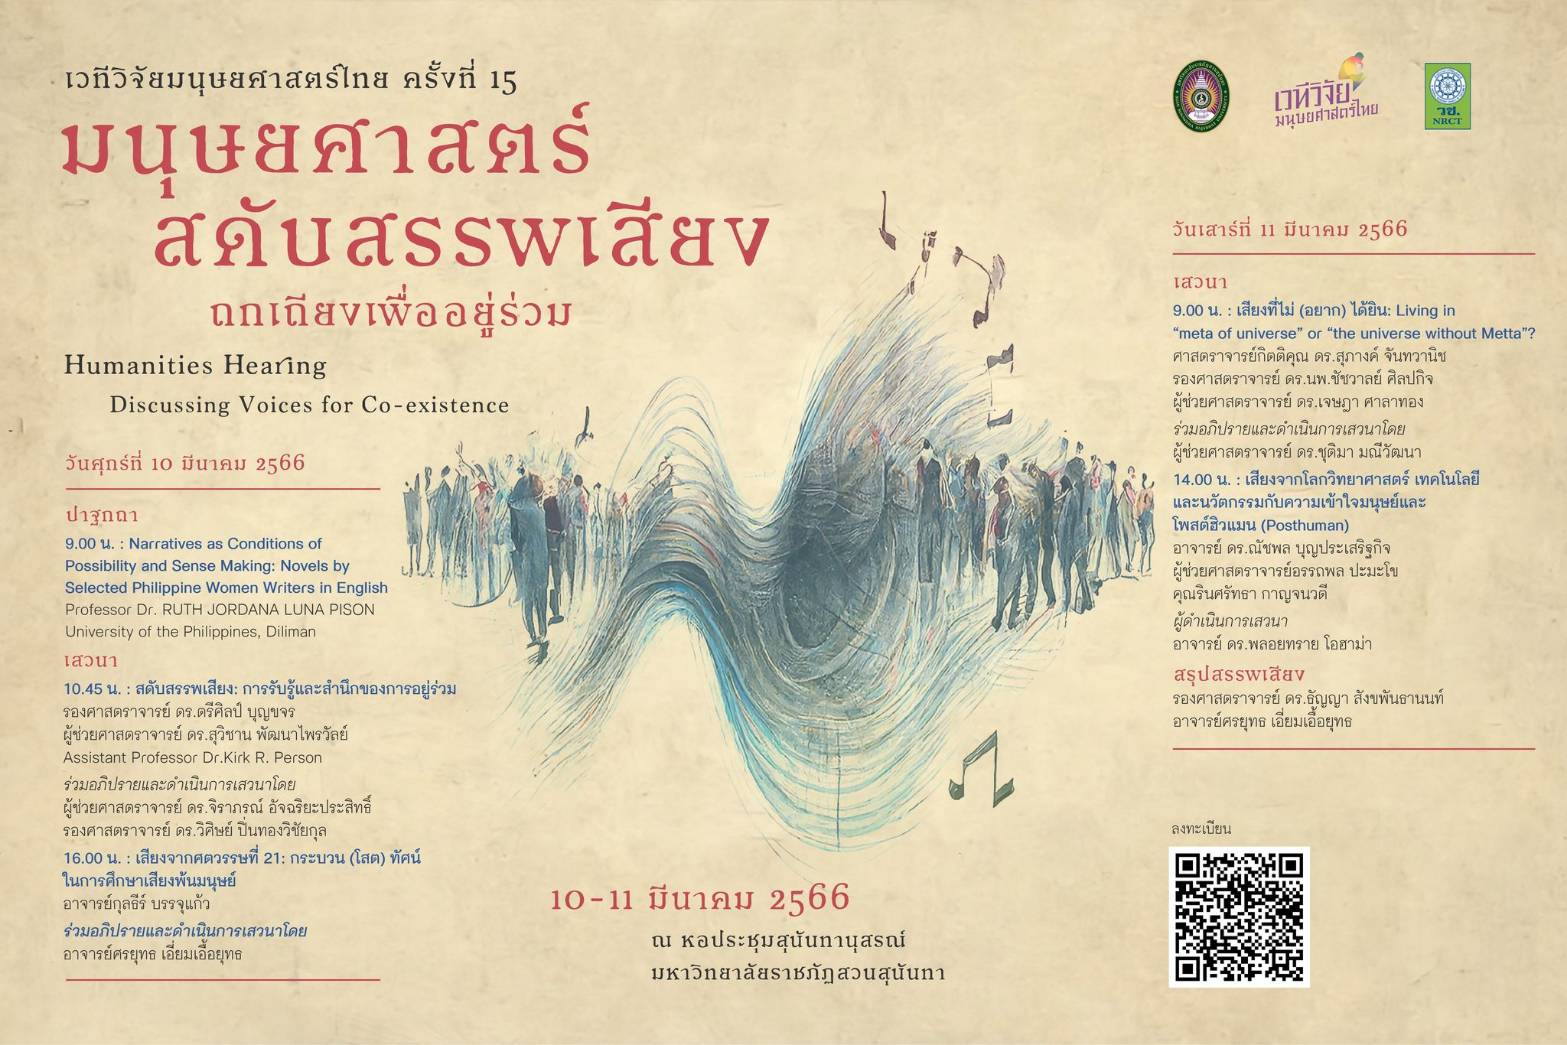 เวทีวิจัยมนุษยศาสตร์ไทย ครั้งที่ 15 “มนุษยศาสตร์สดับสรรพเสียง: ถกเถียงเพื่ออยู่ร่วม”